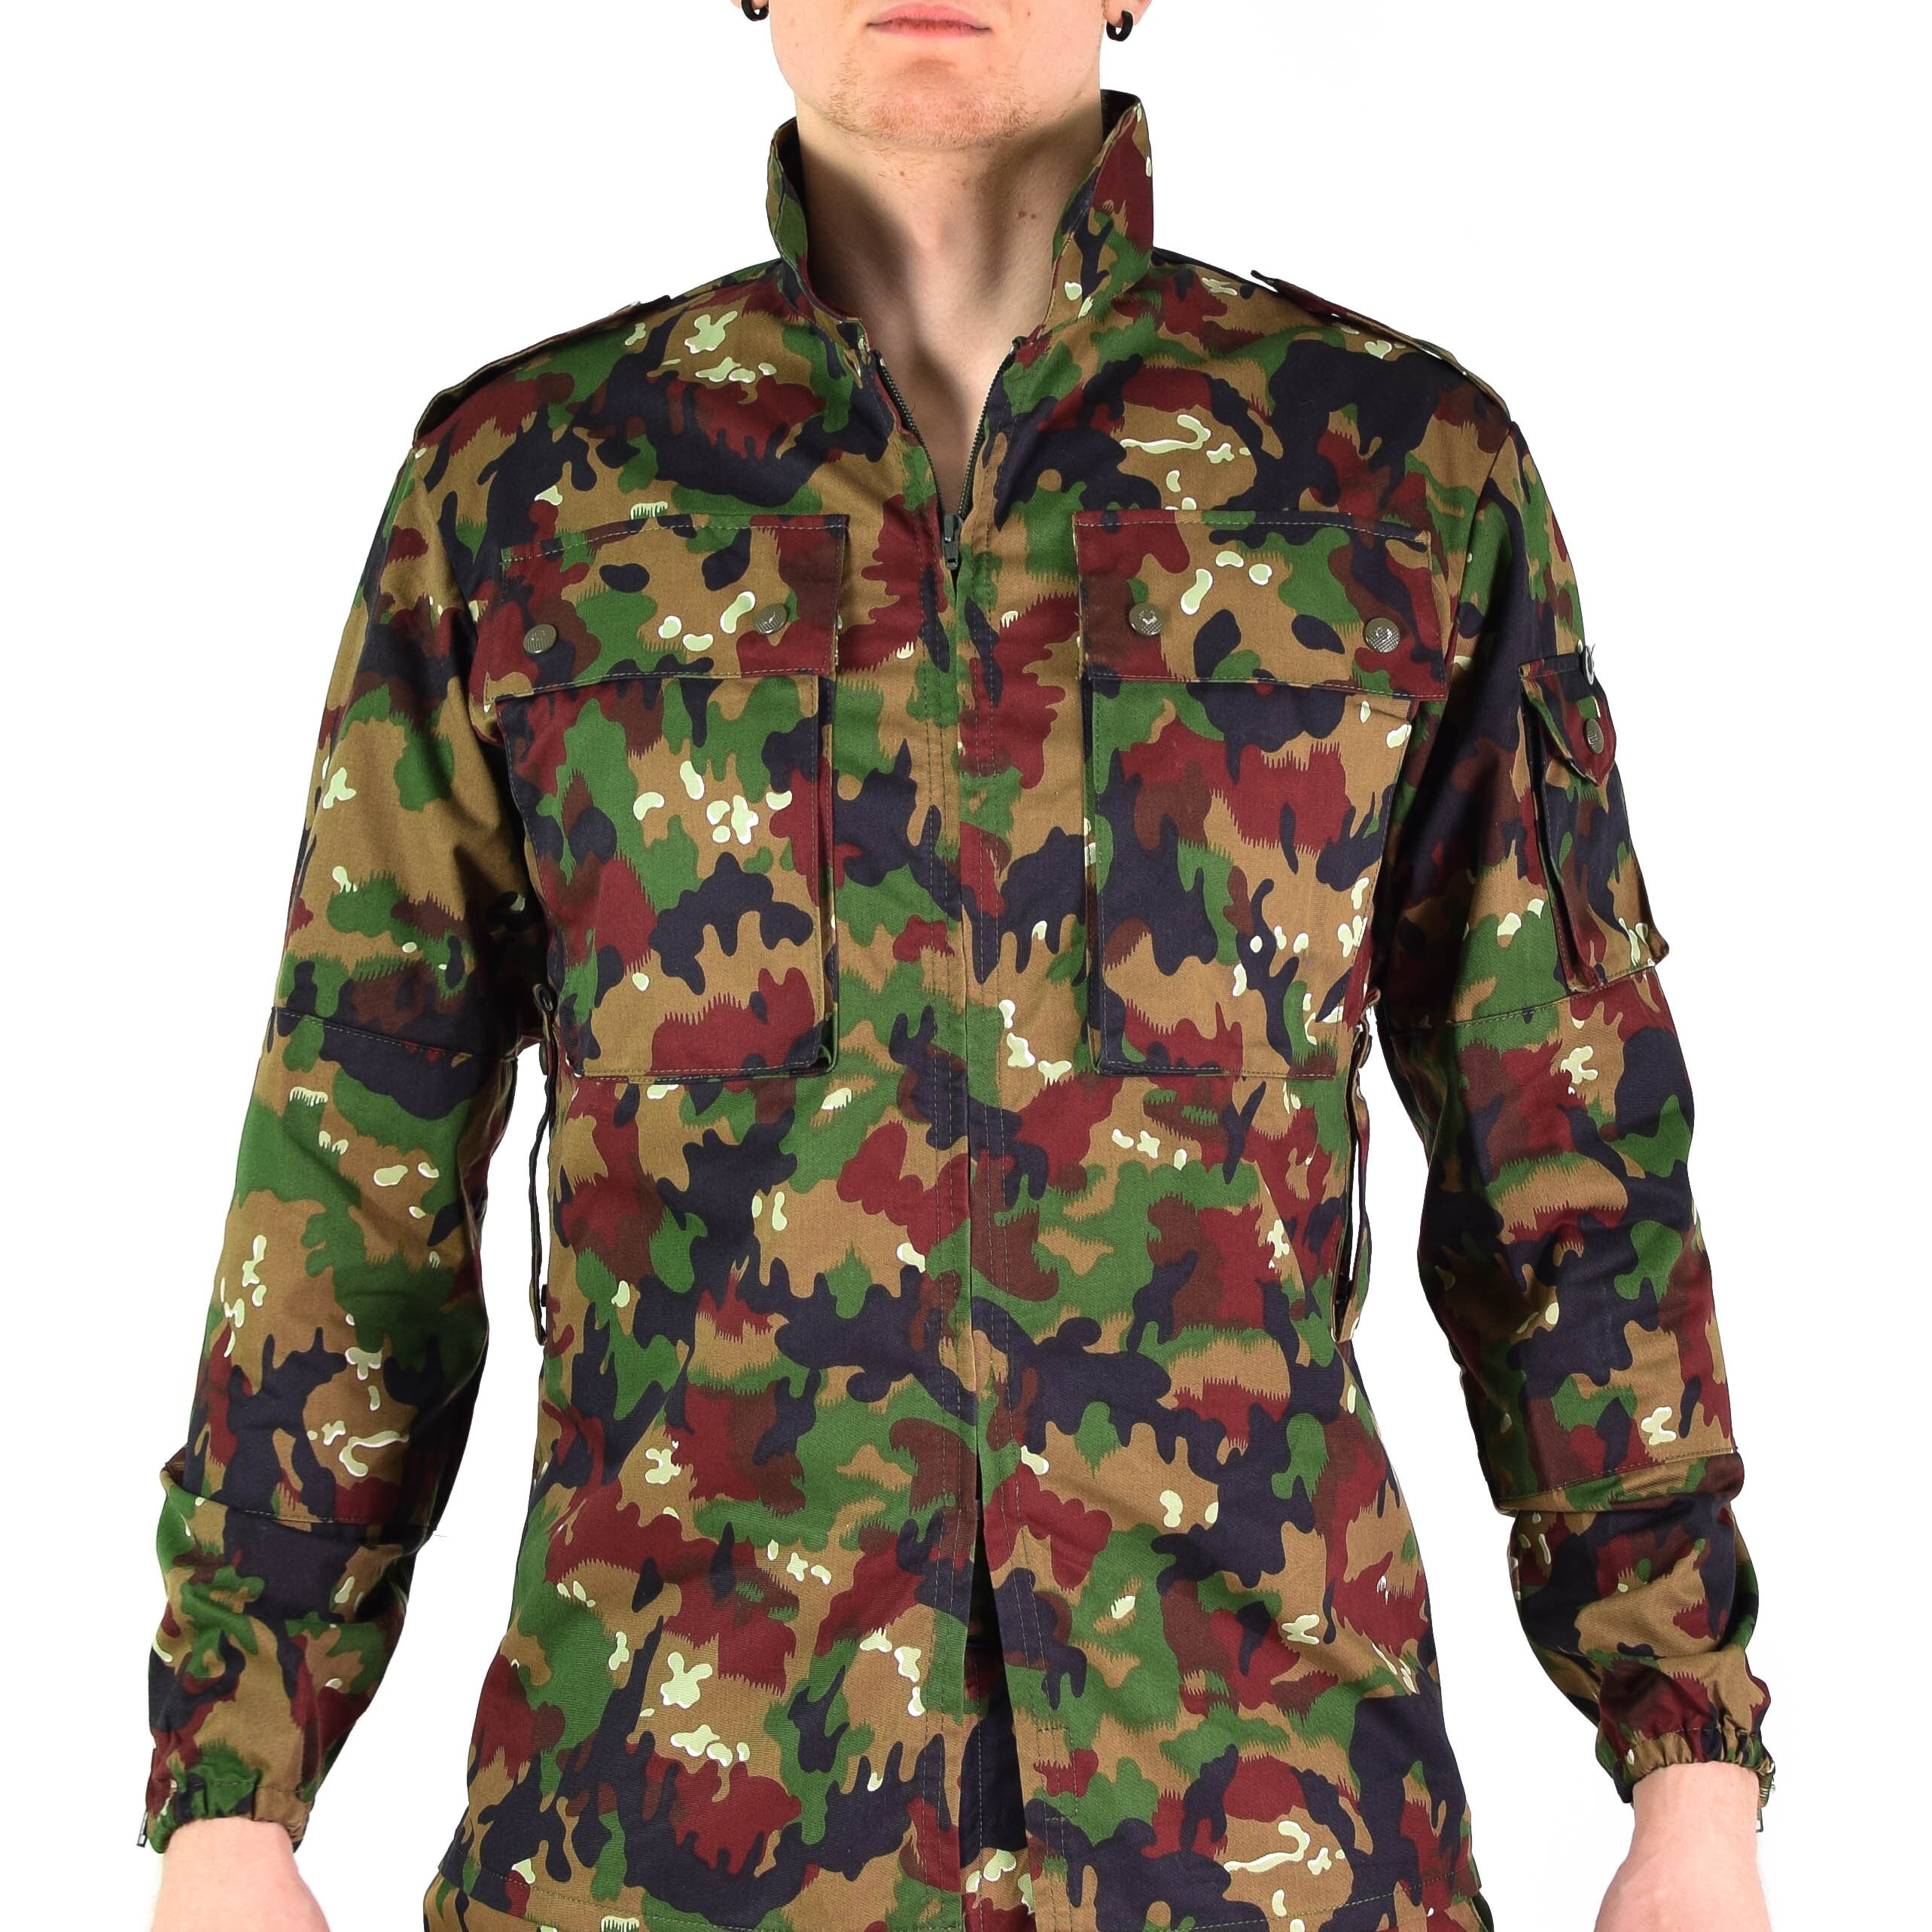 Swiss Army Jacket - Army Military